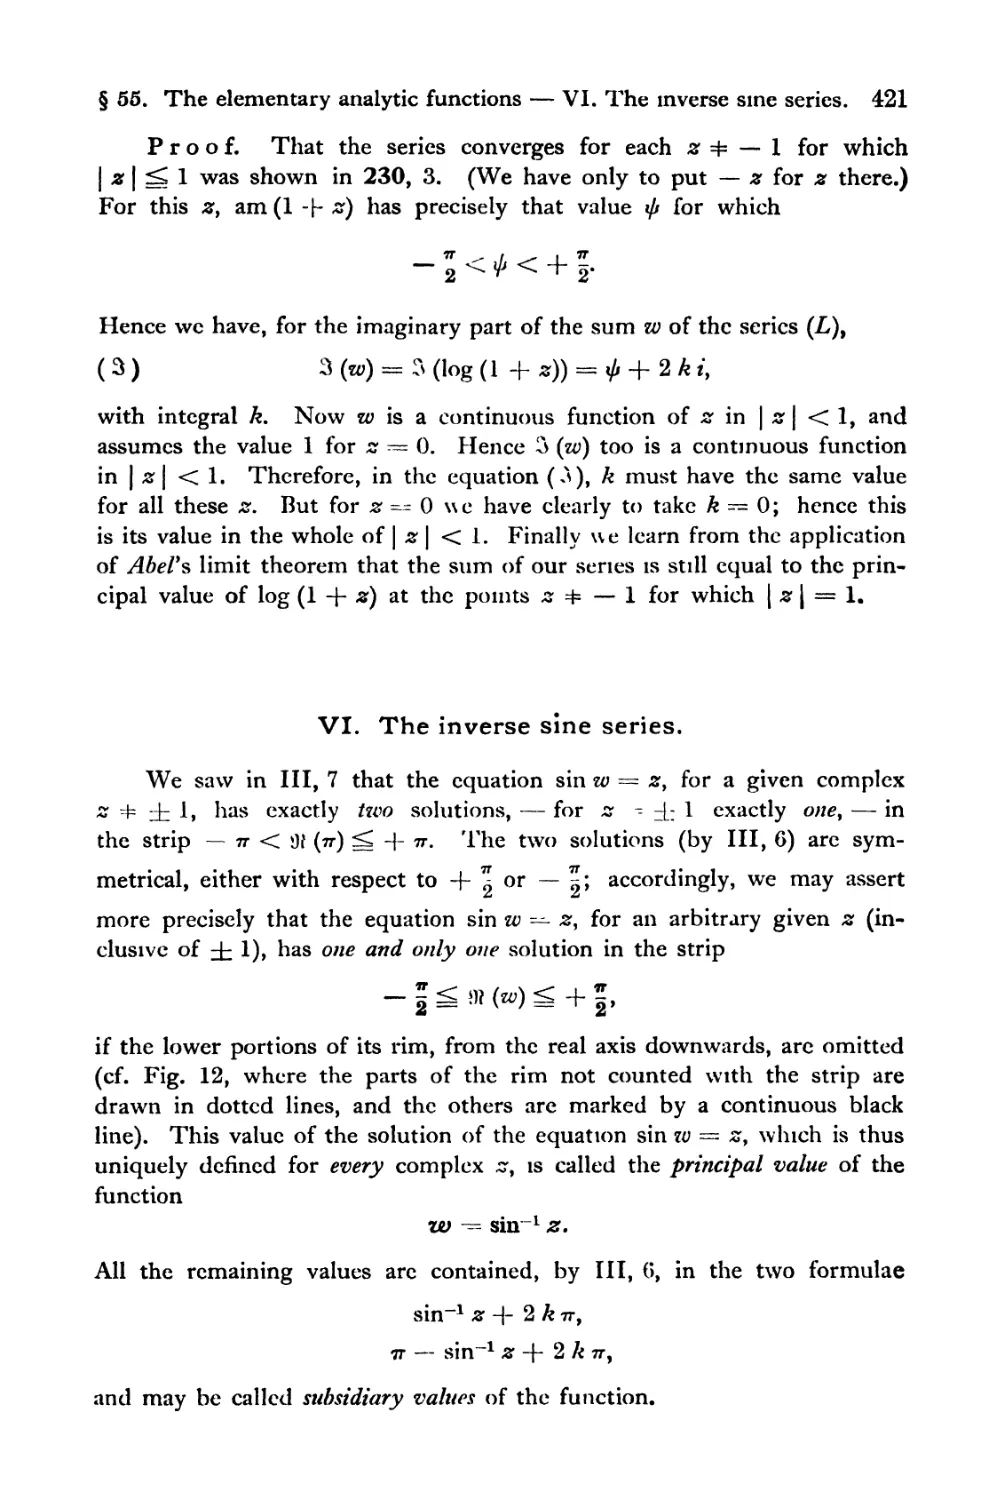 VI. The inverse sine series